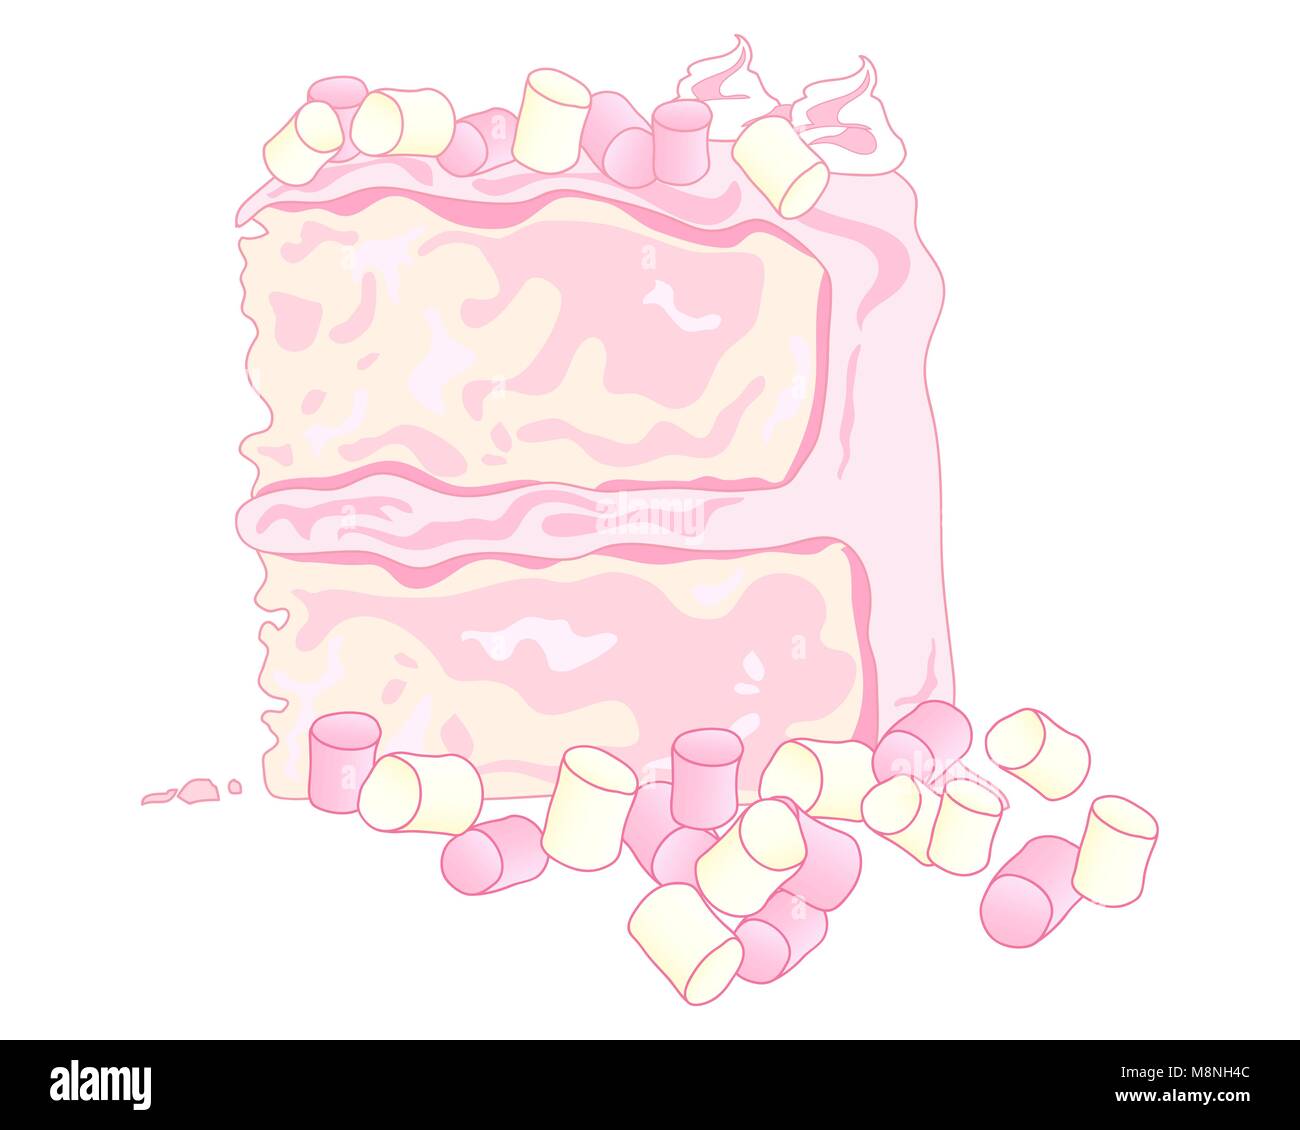 Un vecteur illustration en eps 10 format d'une génoise avec crème au beurre rose guimauve et décoration sur un fond blanc Illustration de Vecteur